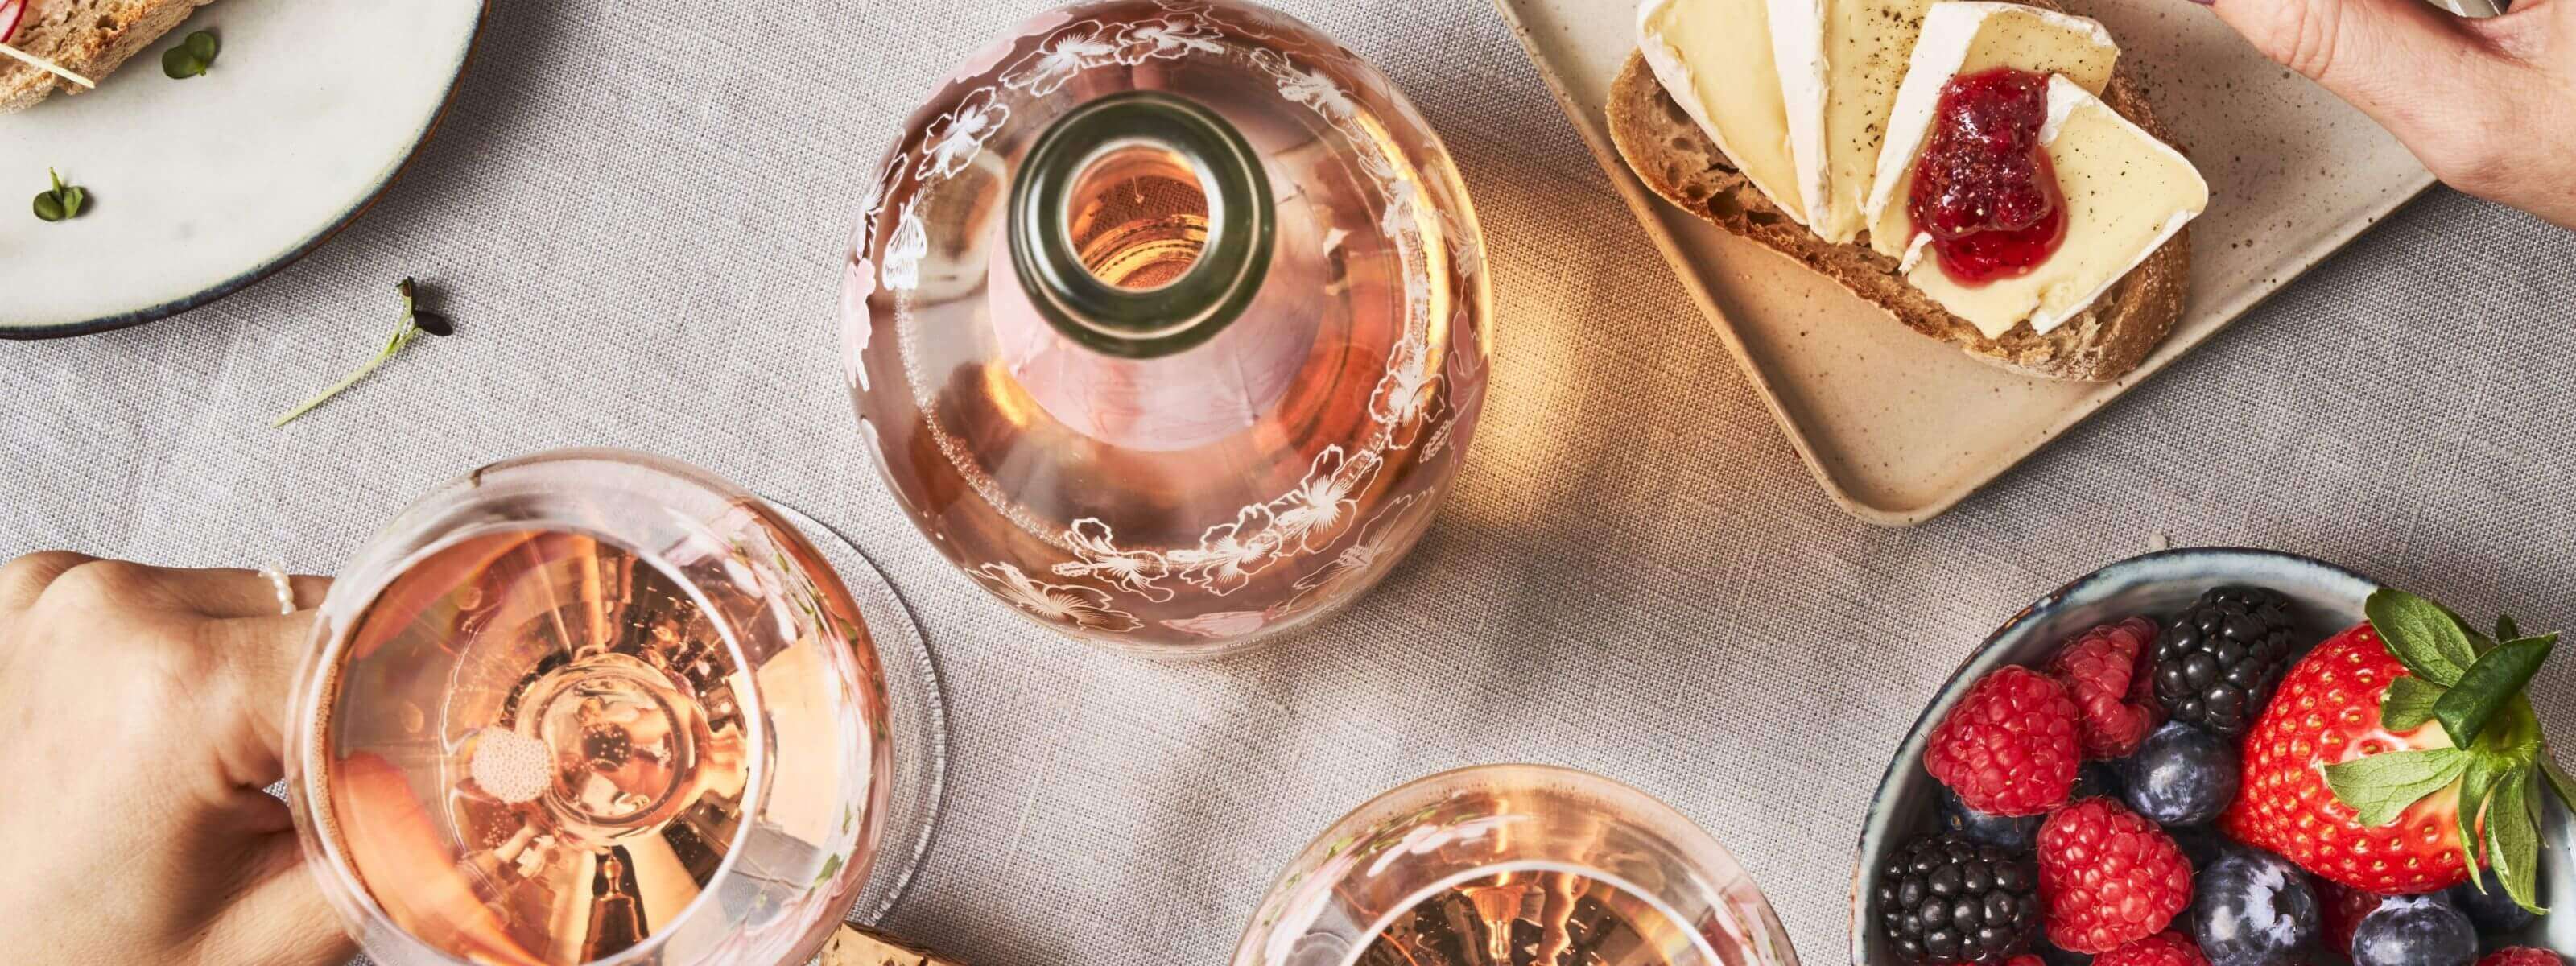 Am gedeckten Tisch mit Brötchen und Beeren steht eine Flsche Schlumberger Spring Edition und zwei Gläser